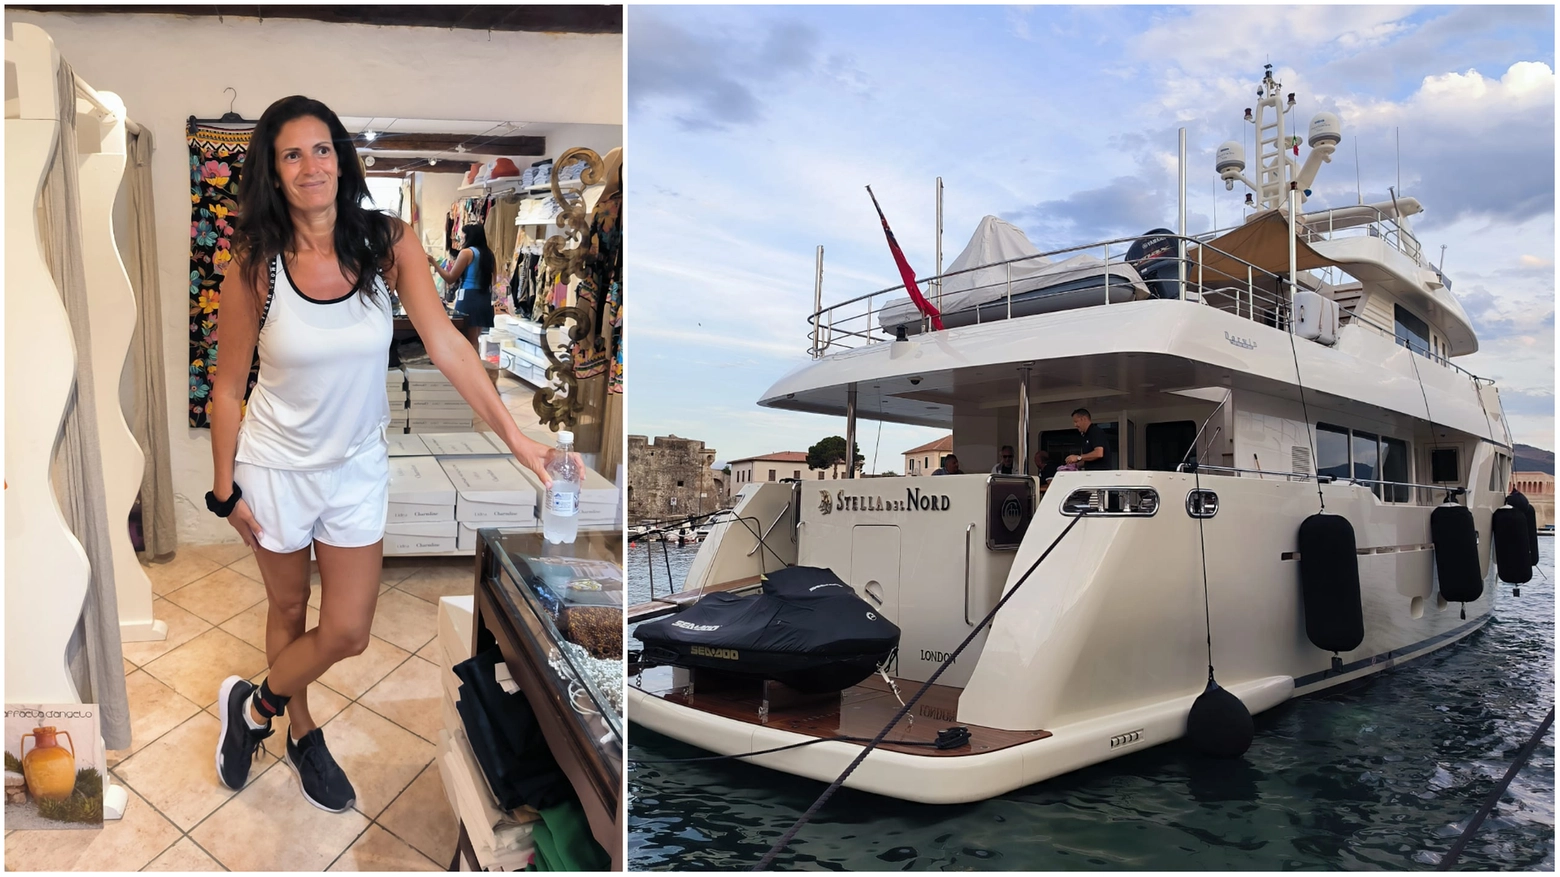 Veronica Berti e lo yacht "La Stella del Nord" a Portoferraio (Foto Valerie Pizzera)